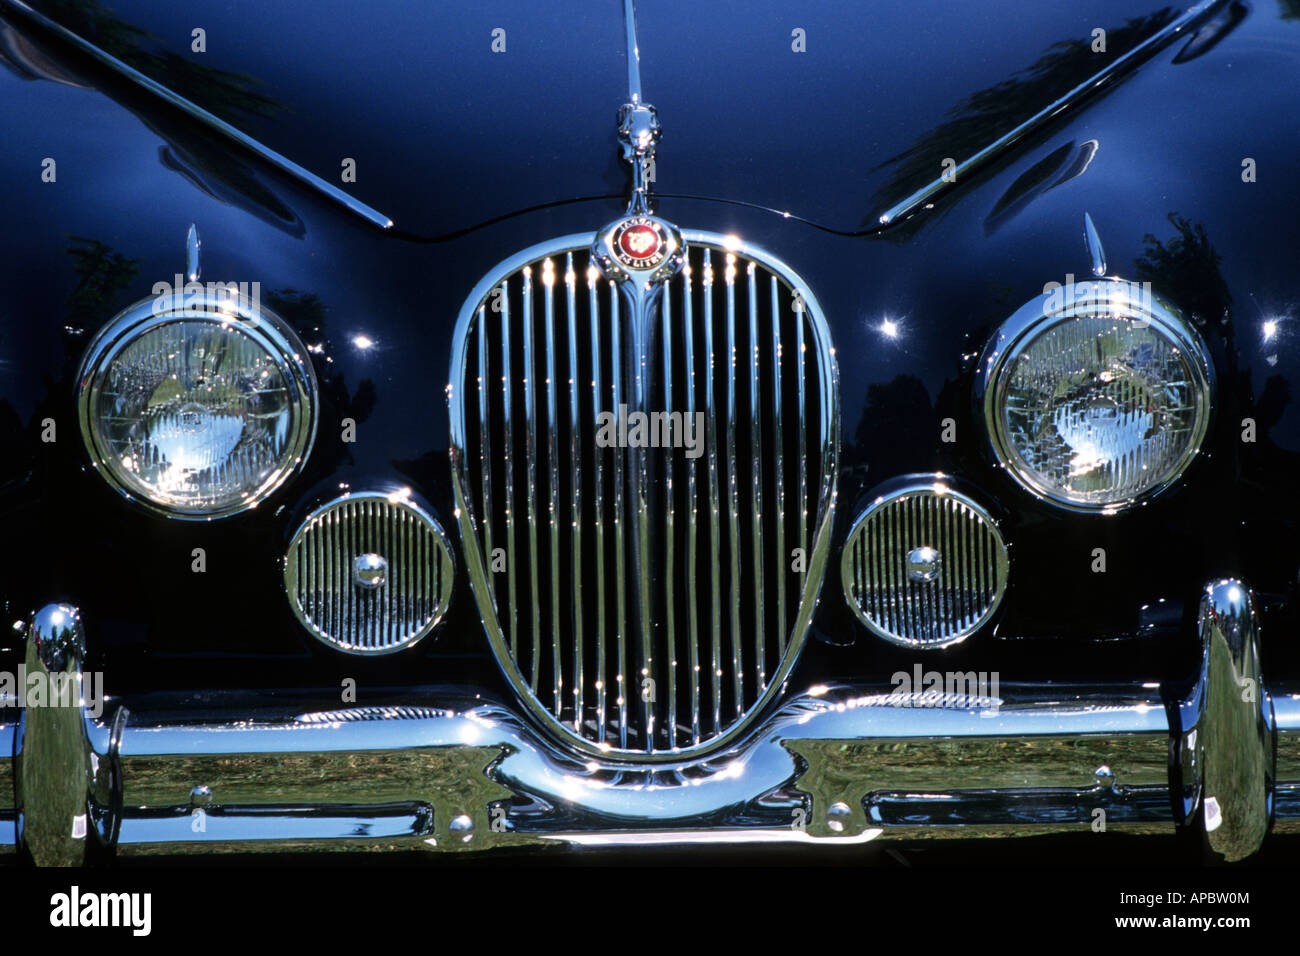 Black Jaguar Antique Classic British Car Stock Photo